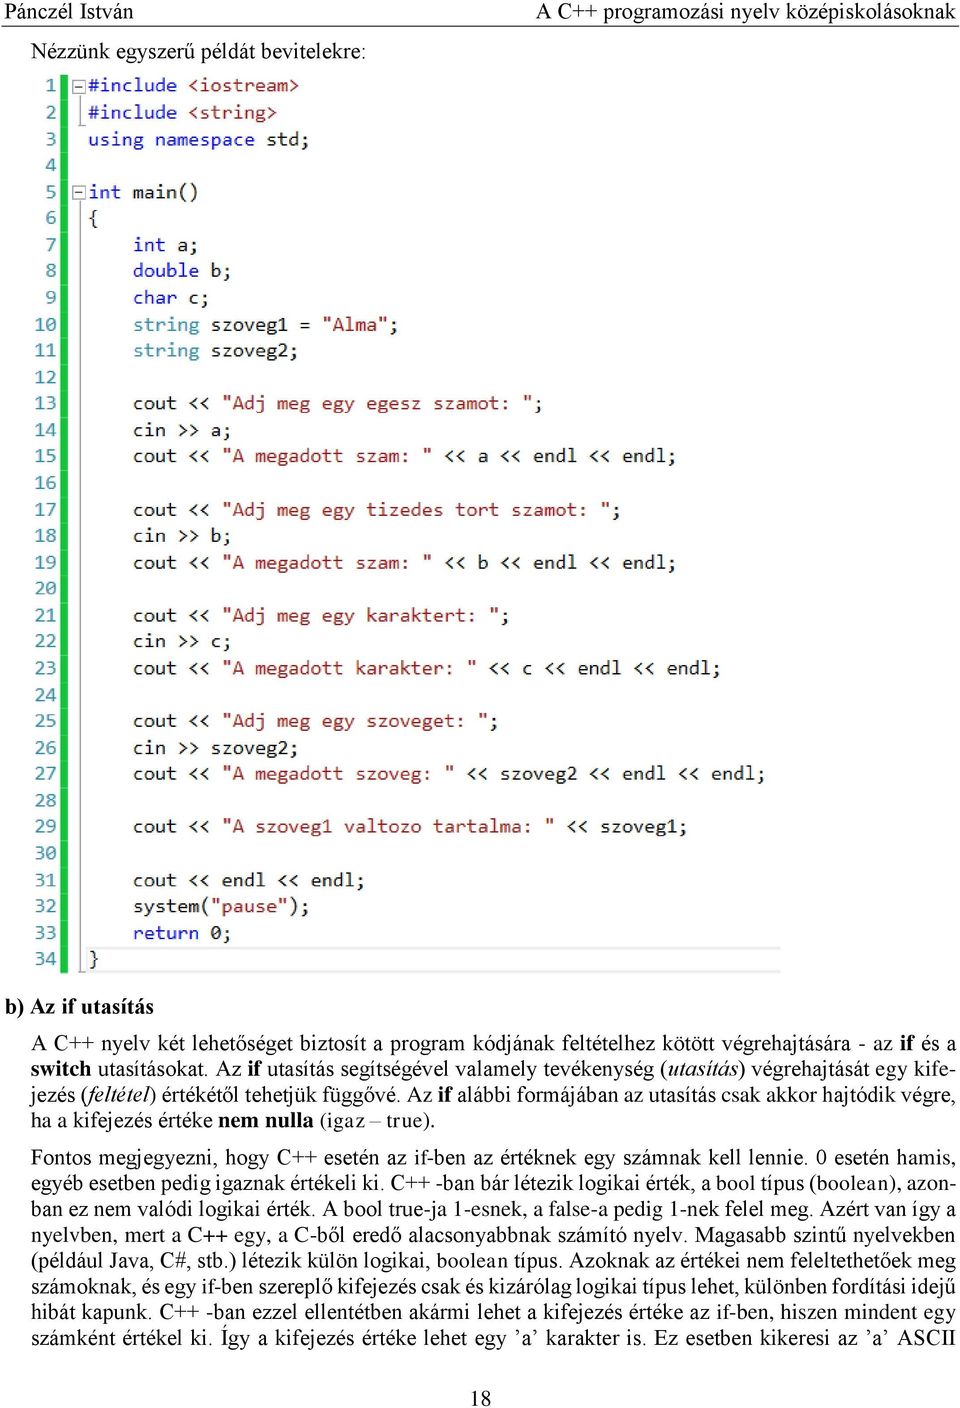 A C++ programozási nyelv középiskolásoknak - PDF Ingyenes letöltés